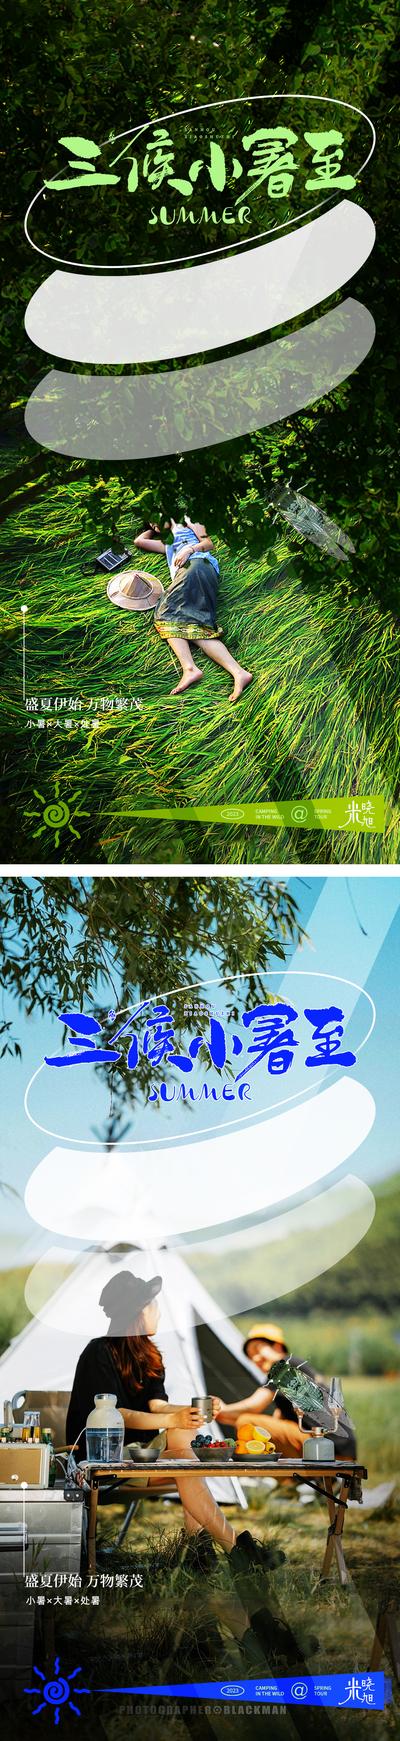 南门网 广告 海报 地产 小暑 大暑 人物 系列 传统节气 户外 树 风景 宣传 系列 节气